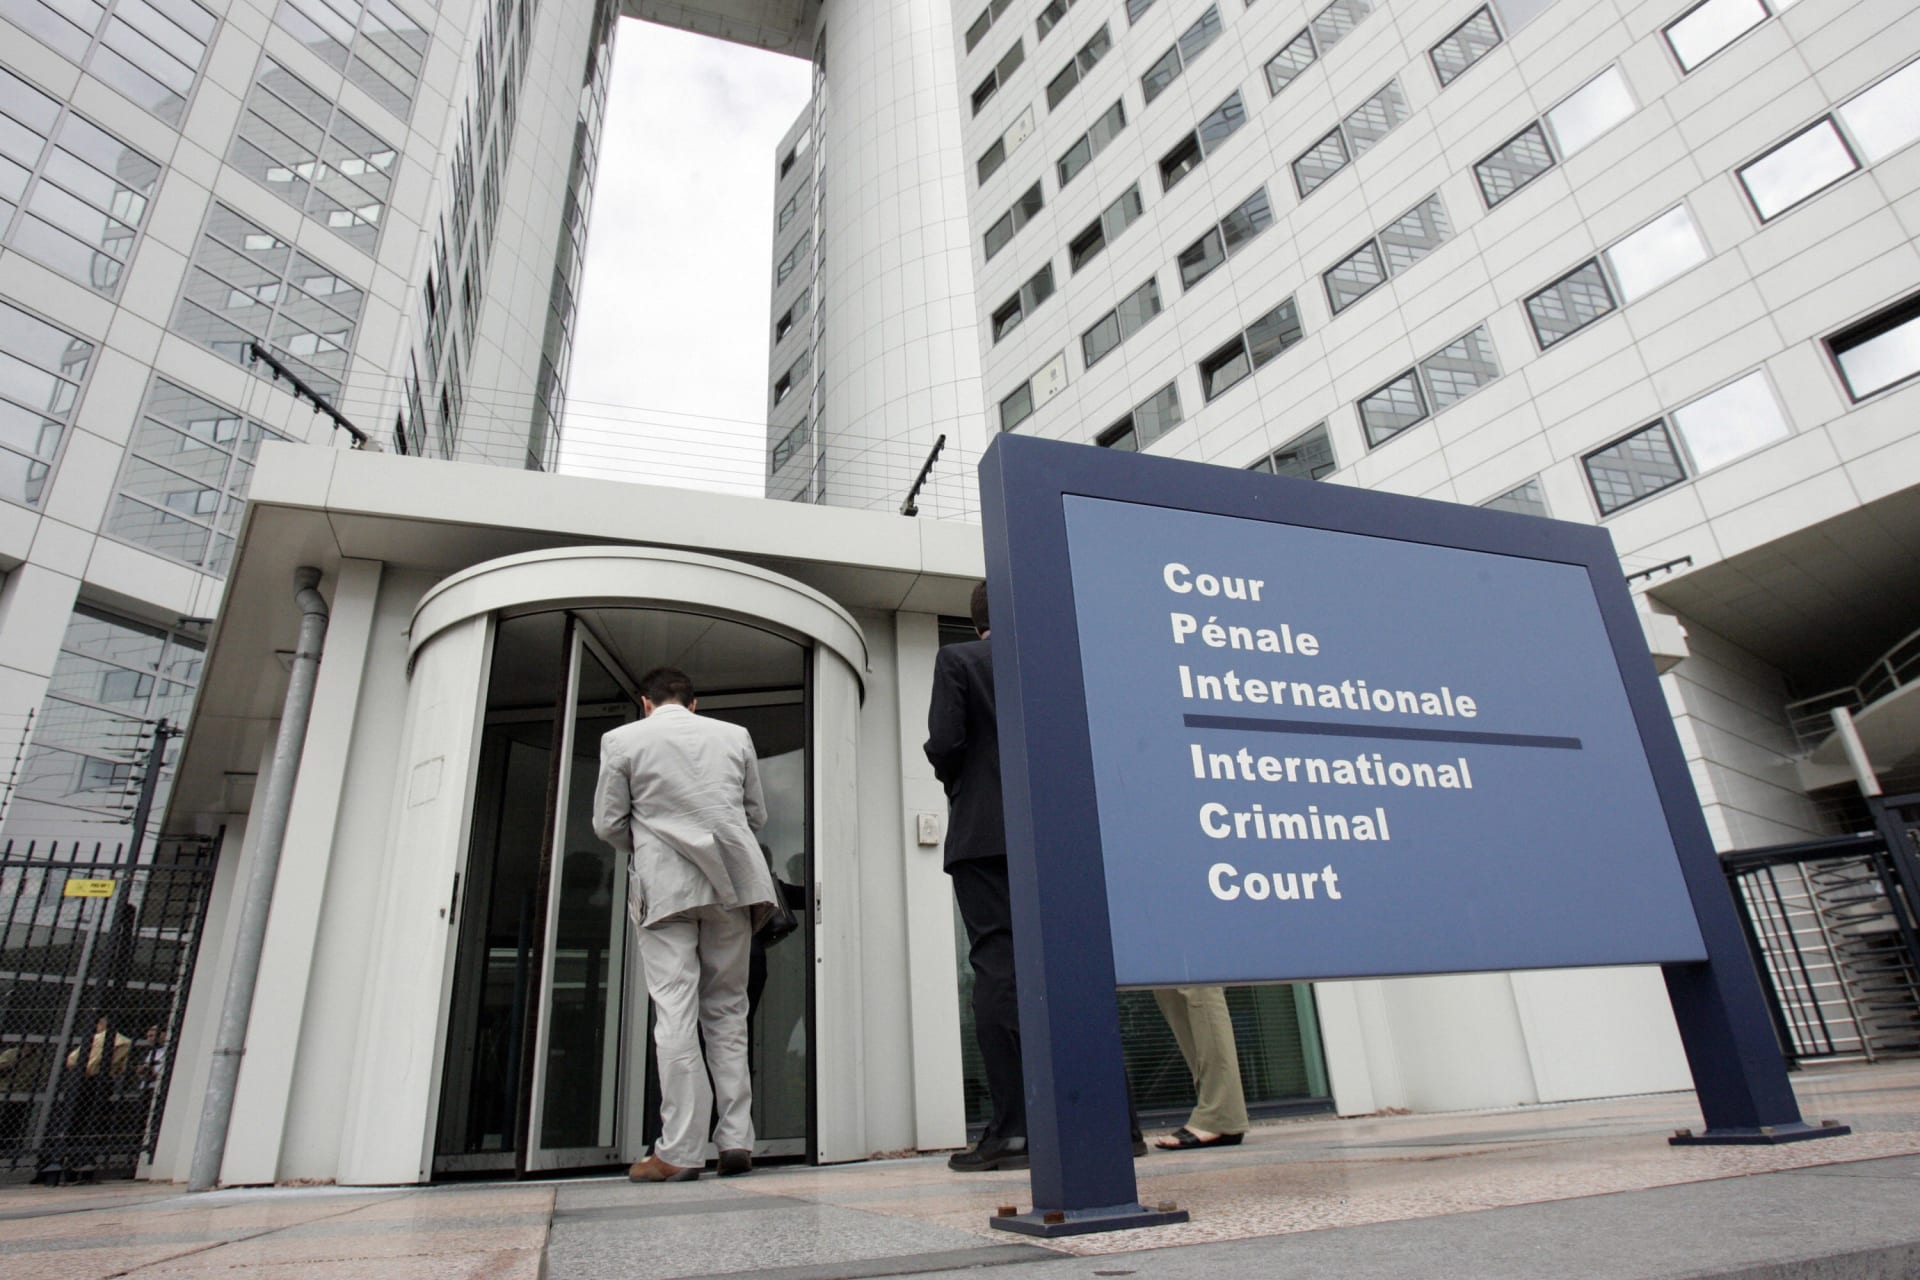 المكسيك وتشيلي تطلبان من المحكمة الجنائية الدولية التحقيق في "جرائم محتملة" بالأراضي الفلسطينية